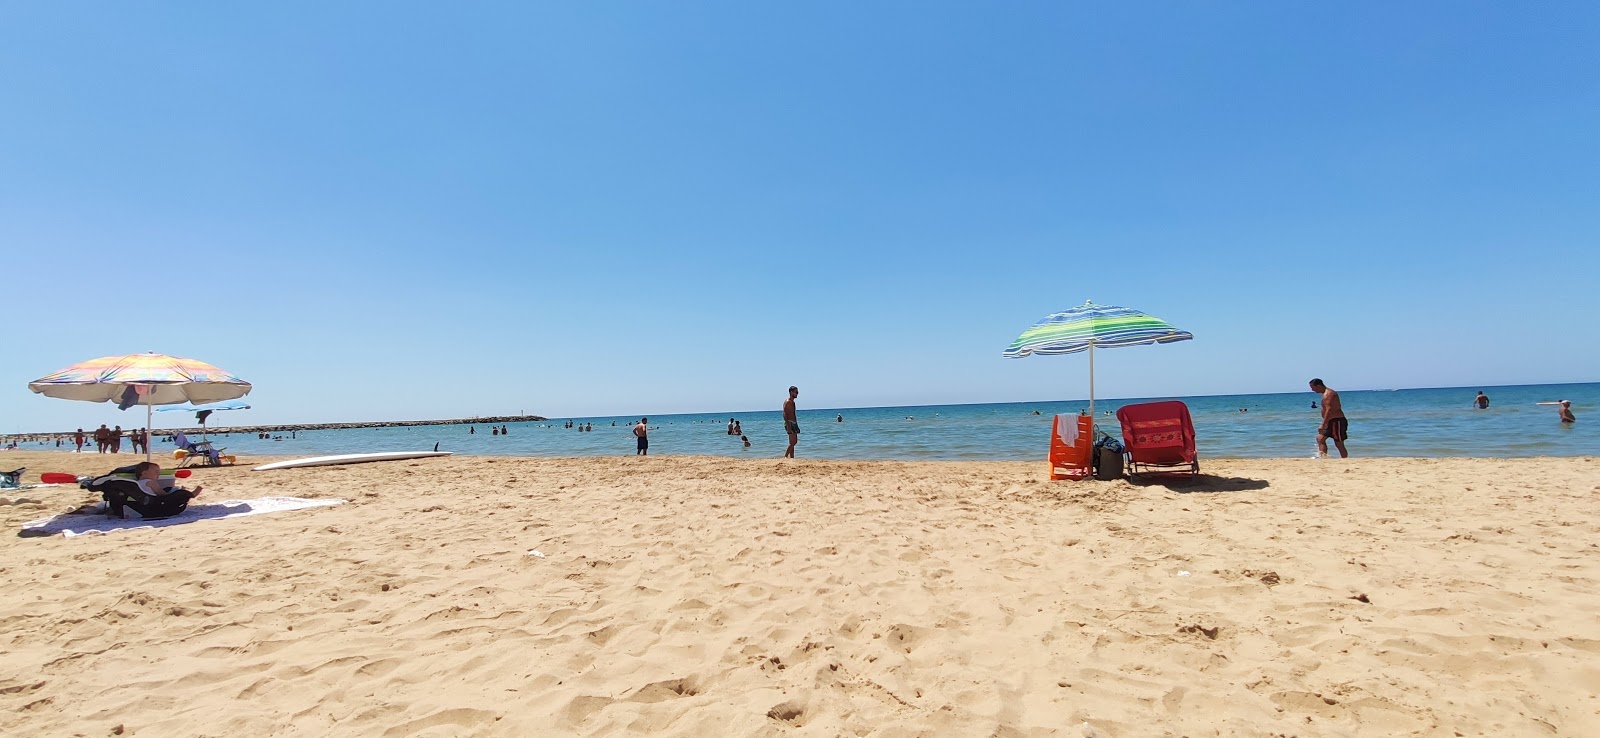 Donnalucata beach'in fotoğrafı parlak kum yüzey ile